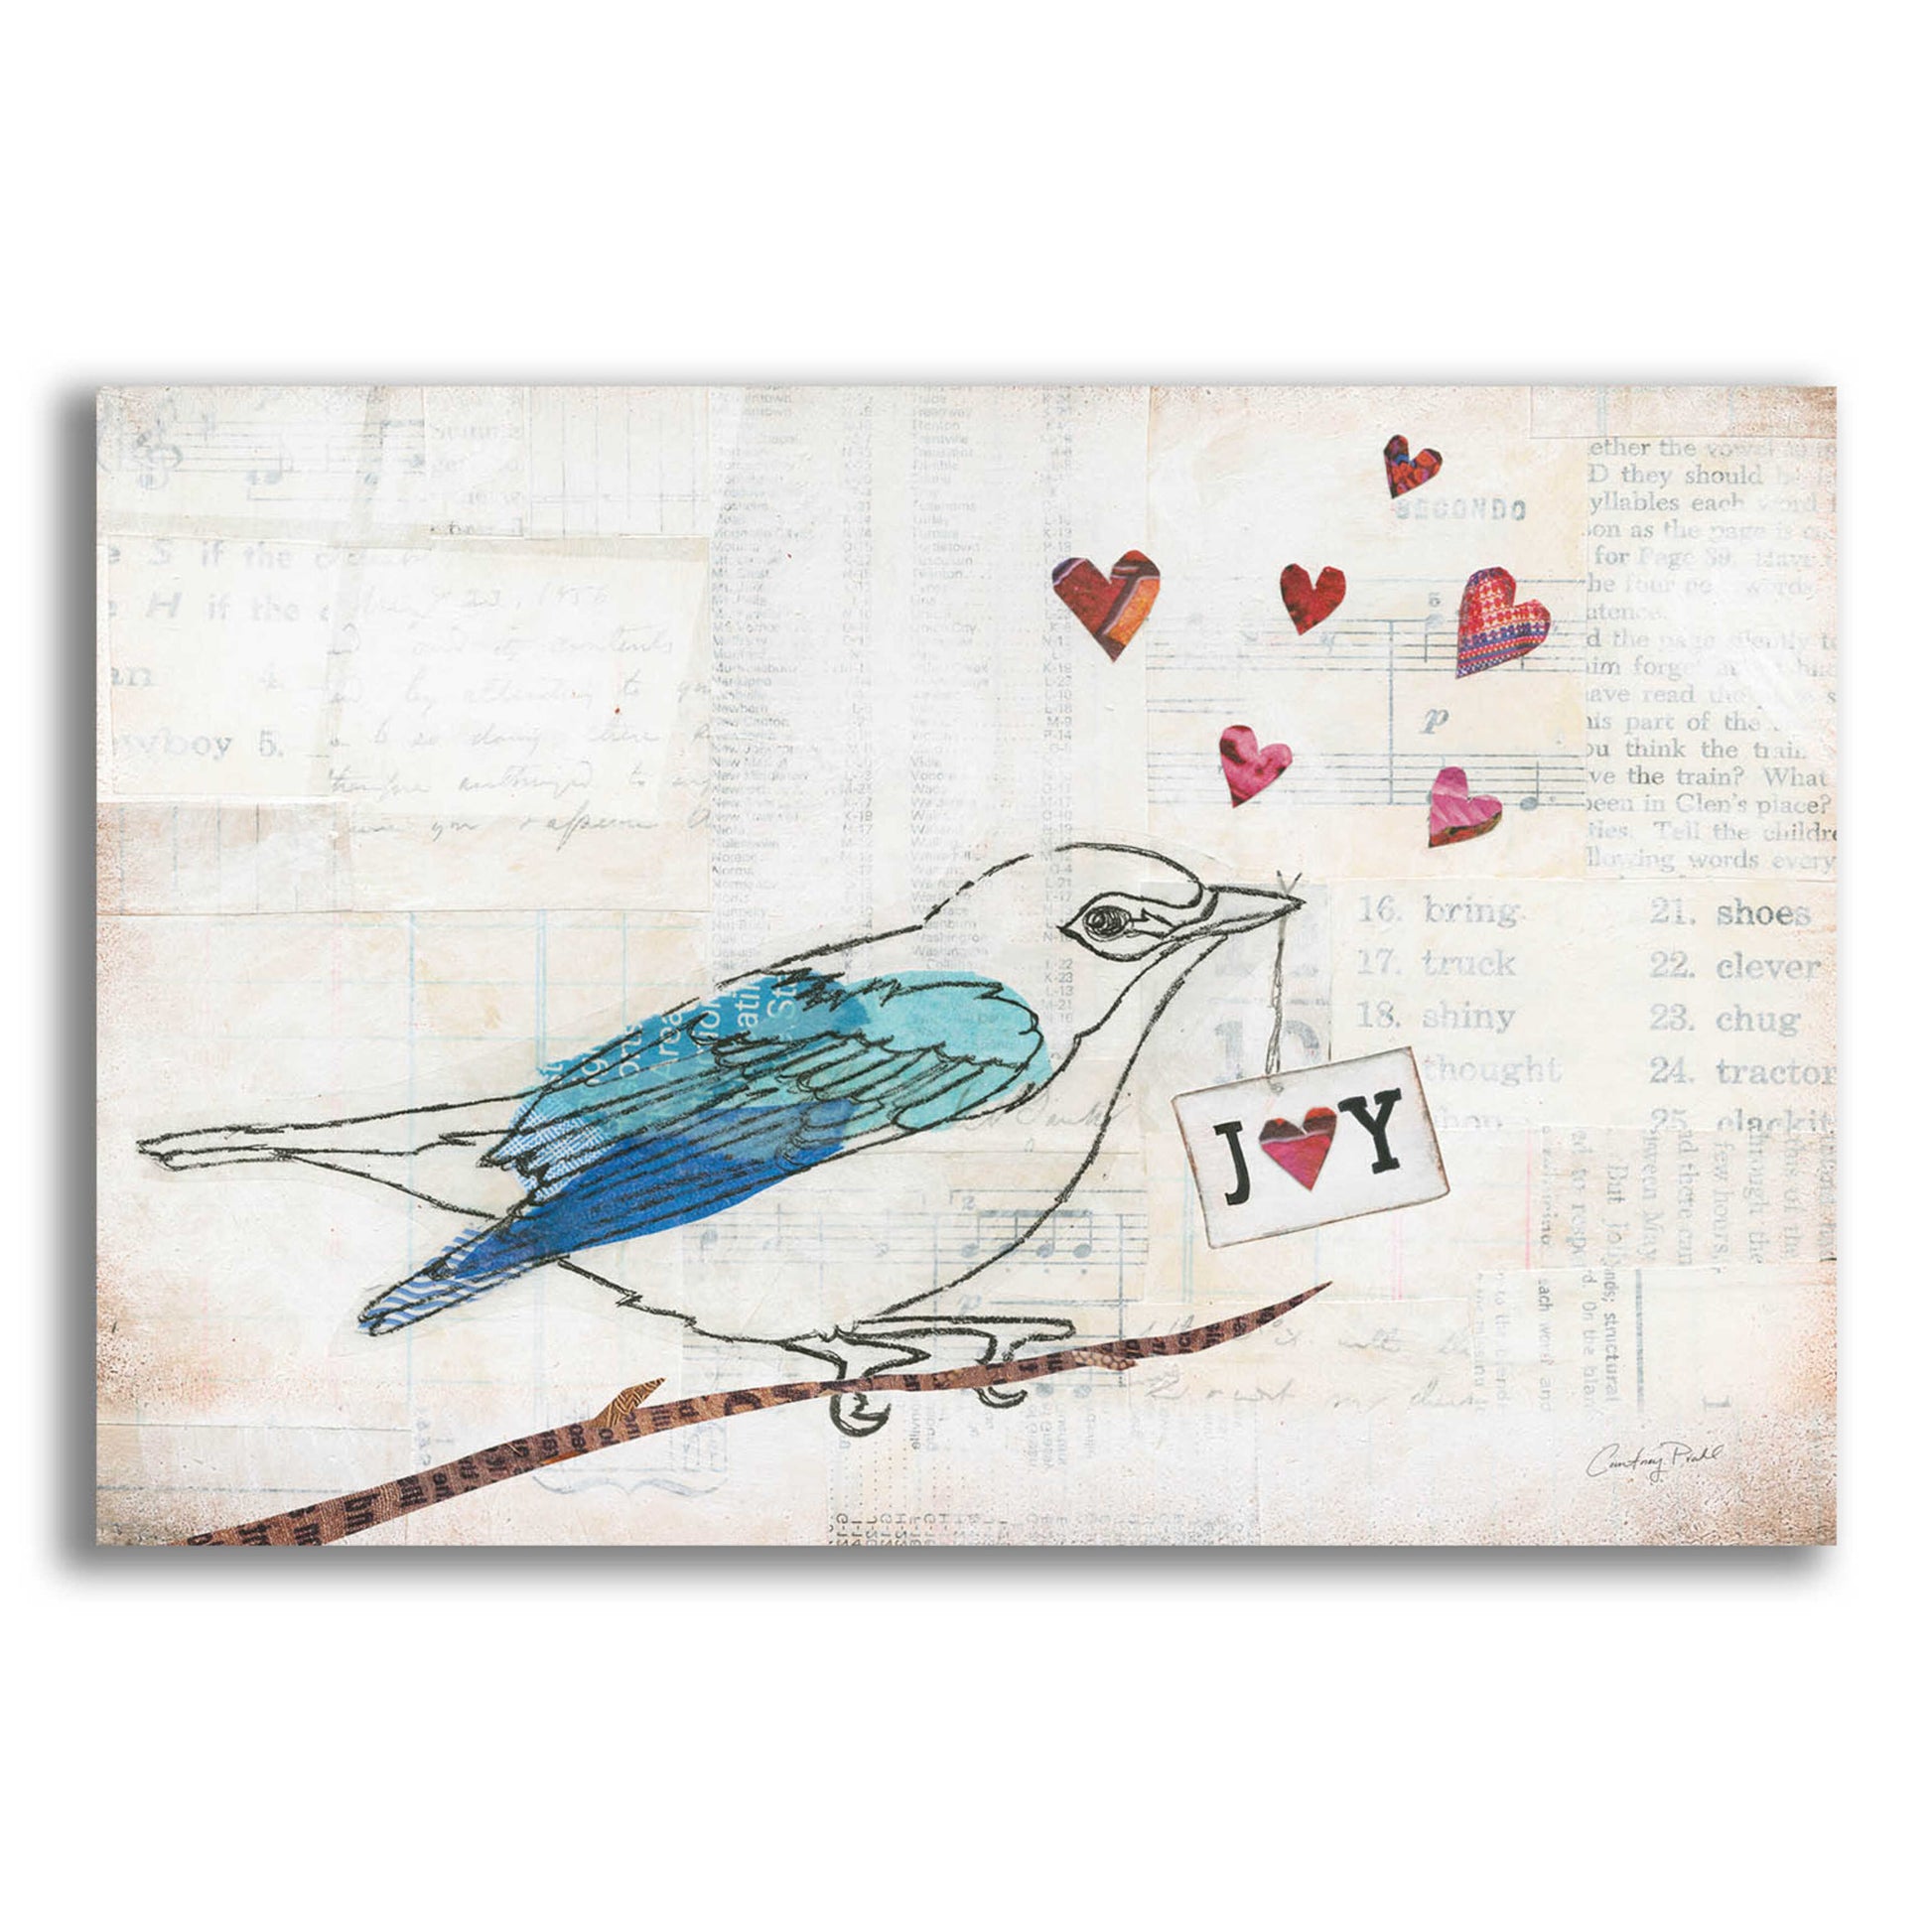 Epic Art 'Love Birds I Joy' by Courtney Prahl, Acrylic Glass Wall Art,16x12